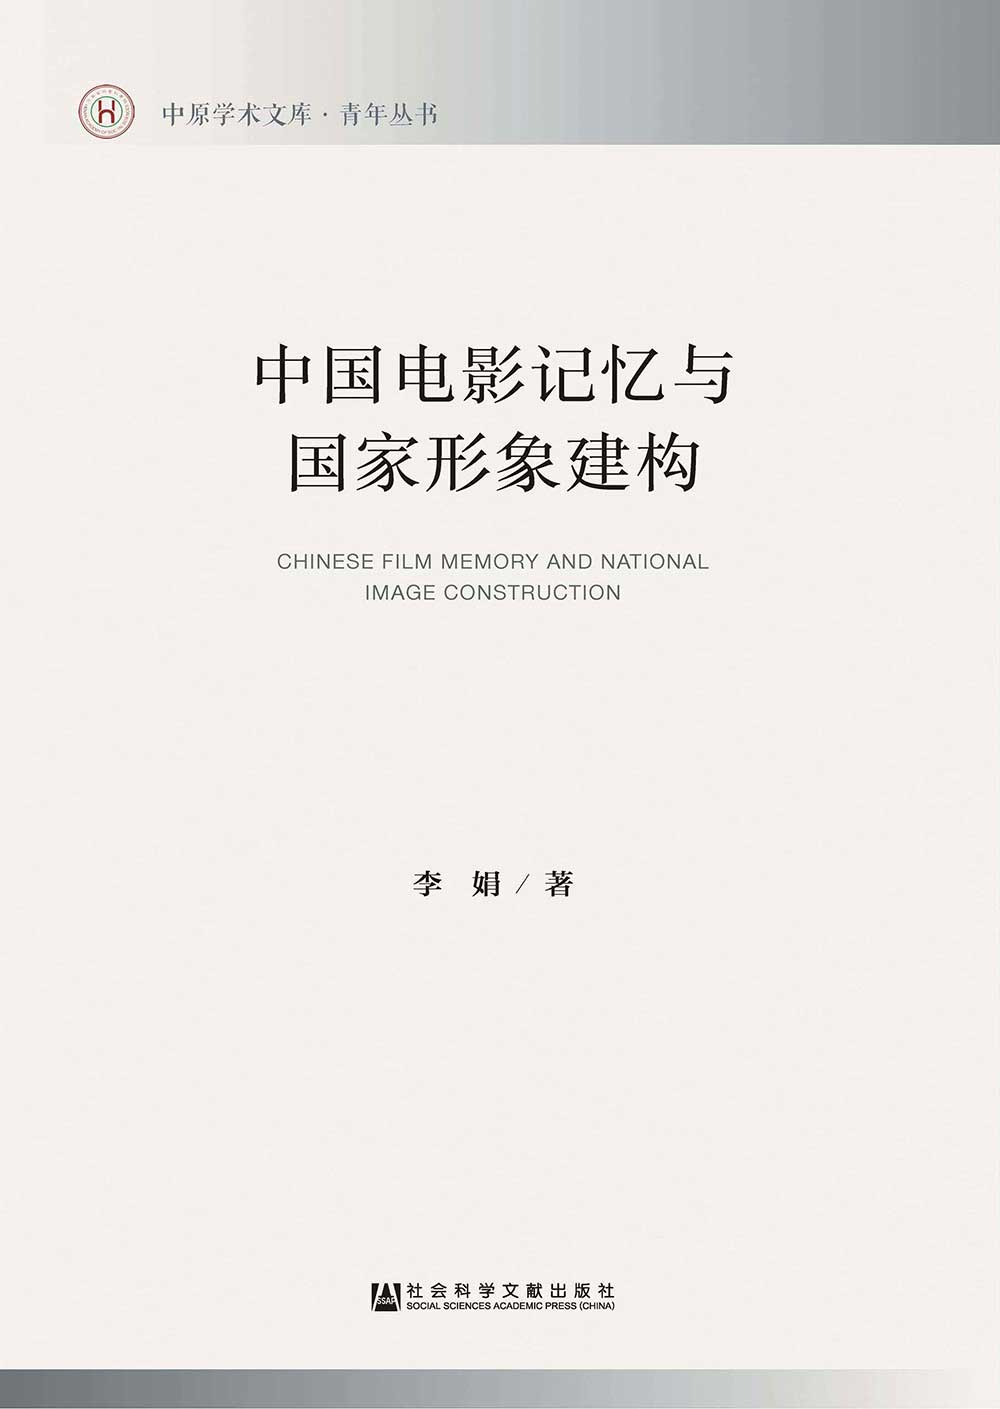 中國電影記憶與國家形象建構(簡體版) 